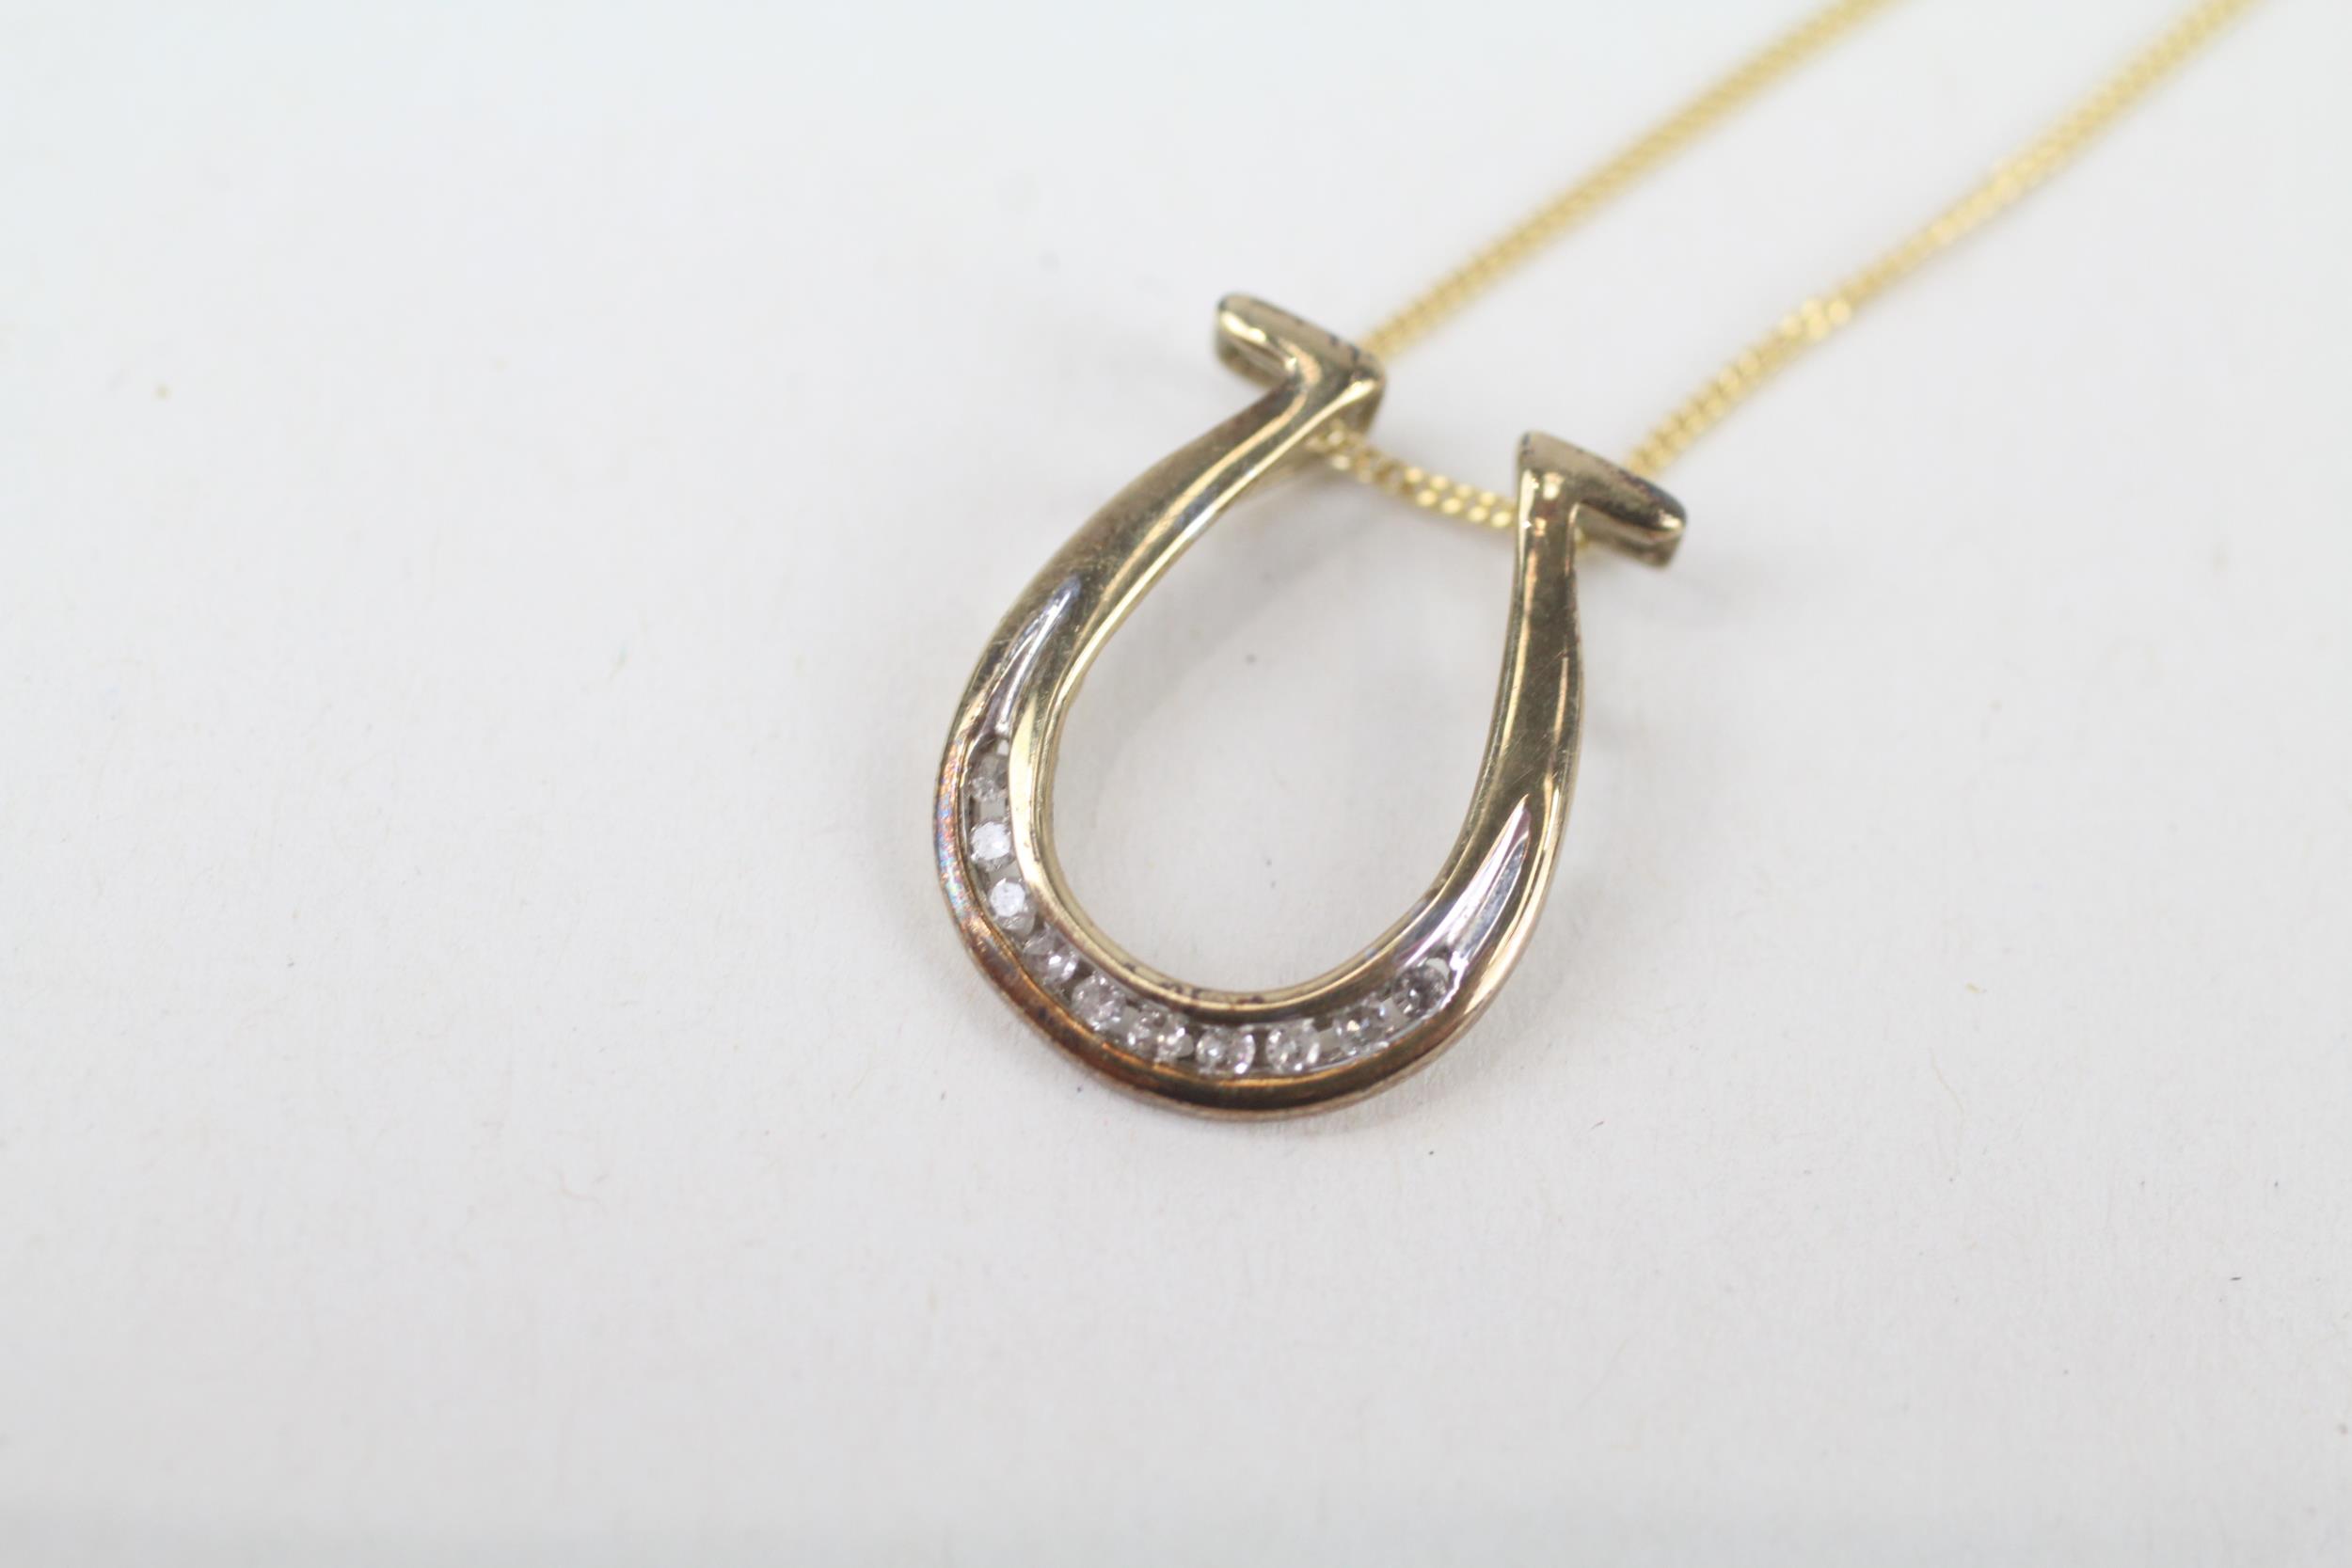 9ct gold diamond horseshoe pendant necklace 1.6 g - Image 2 of 4